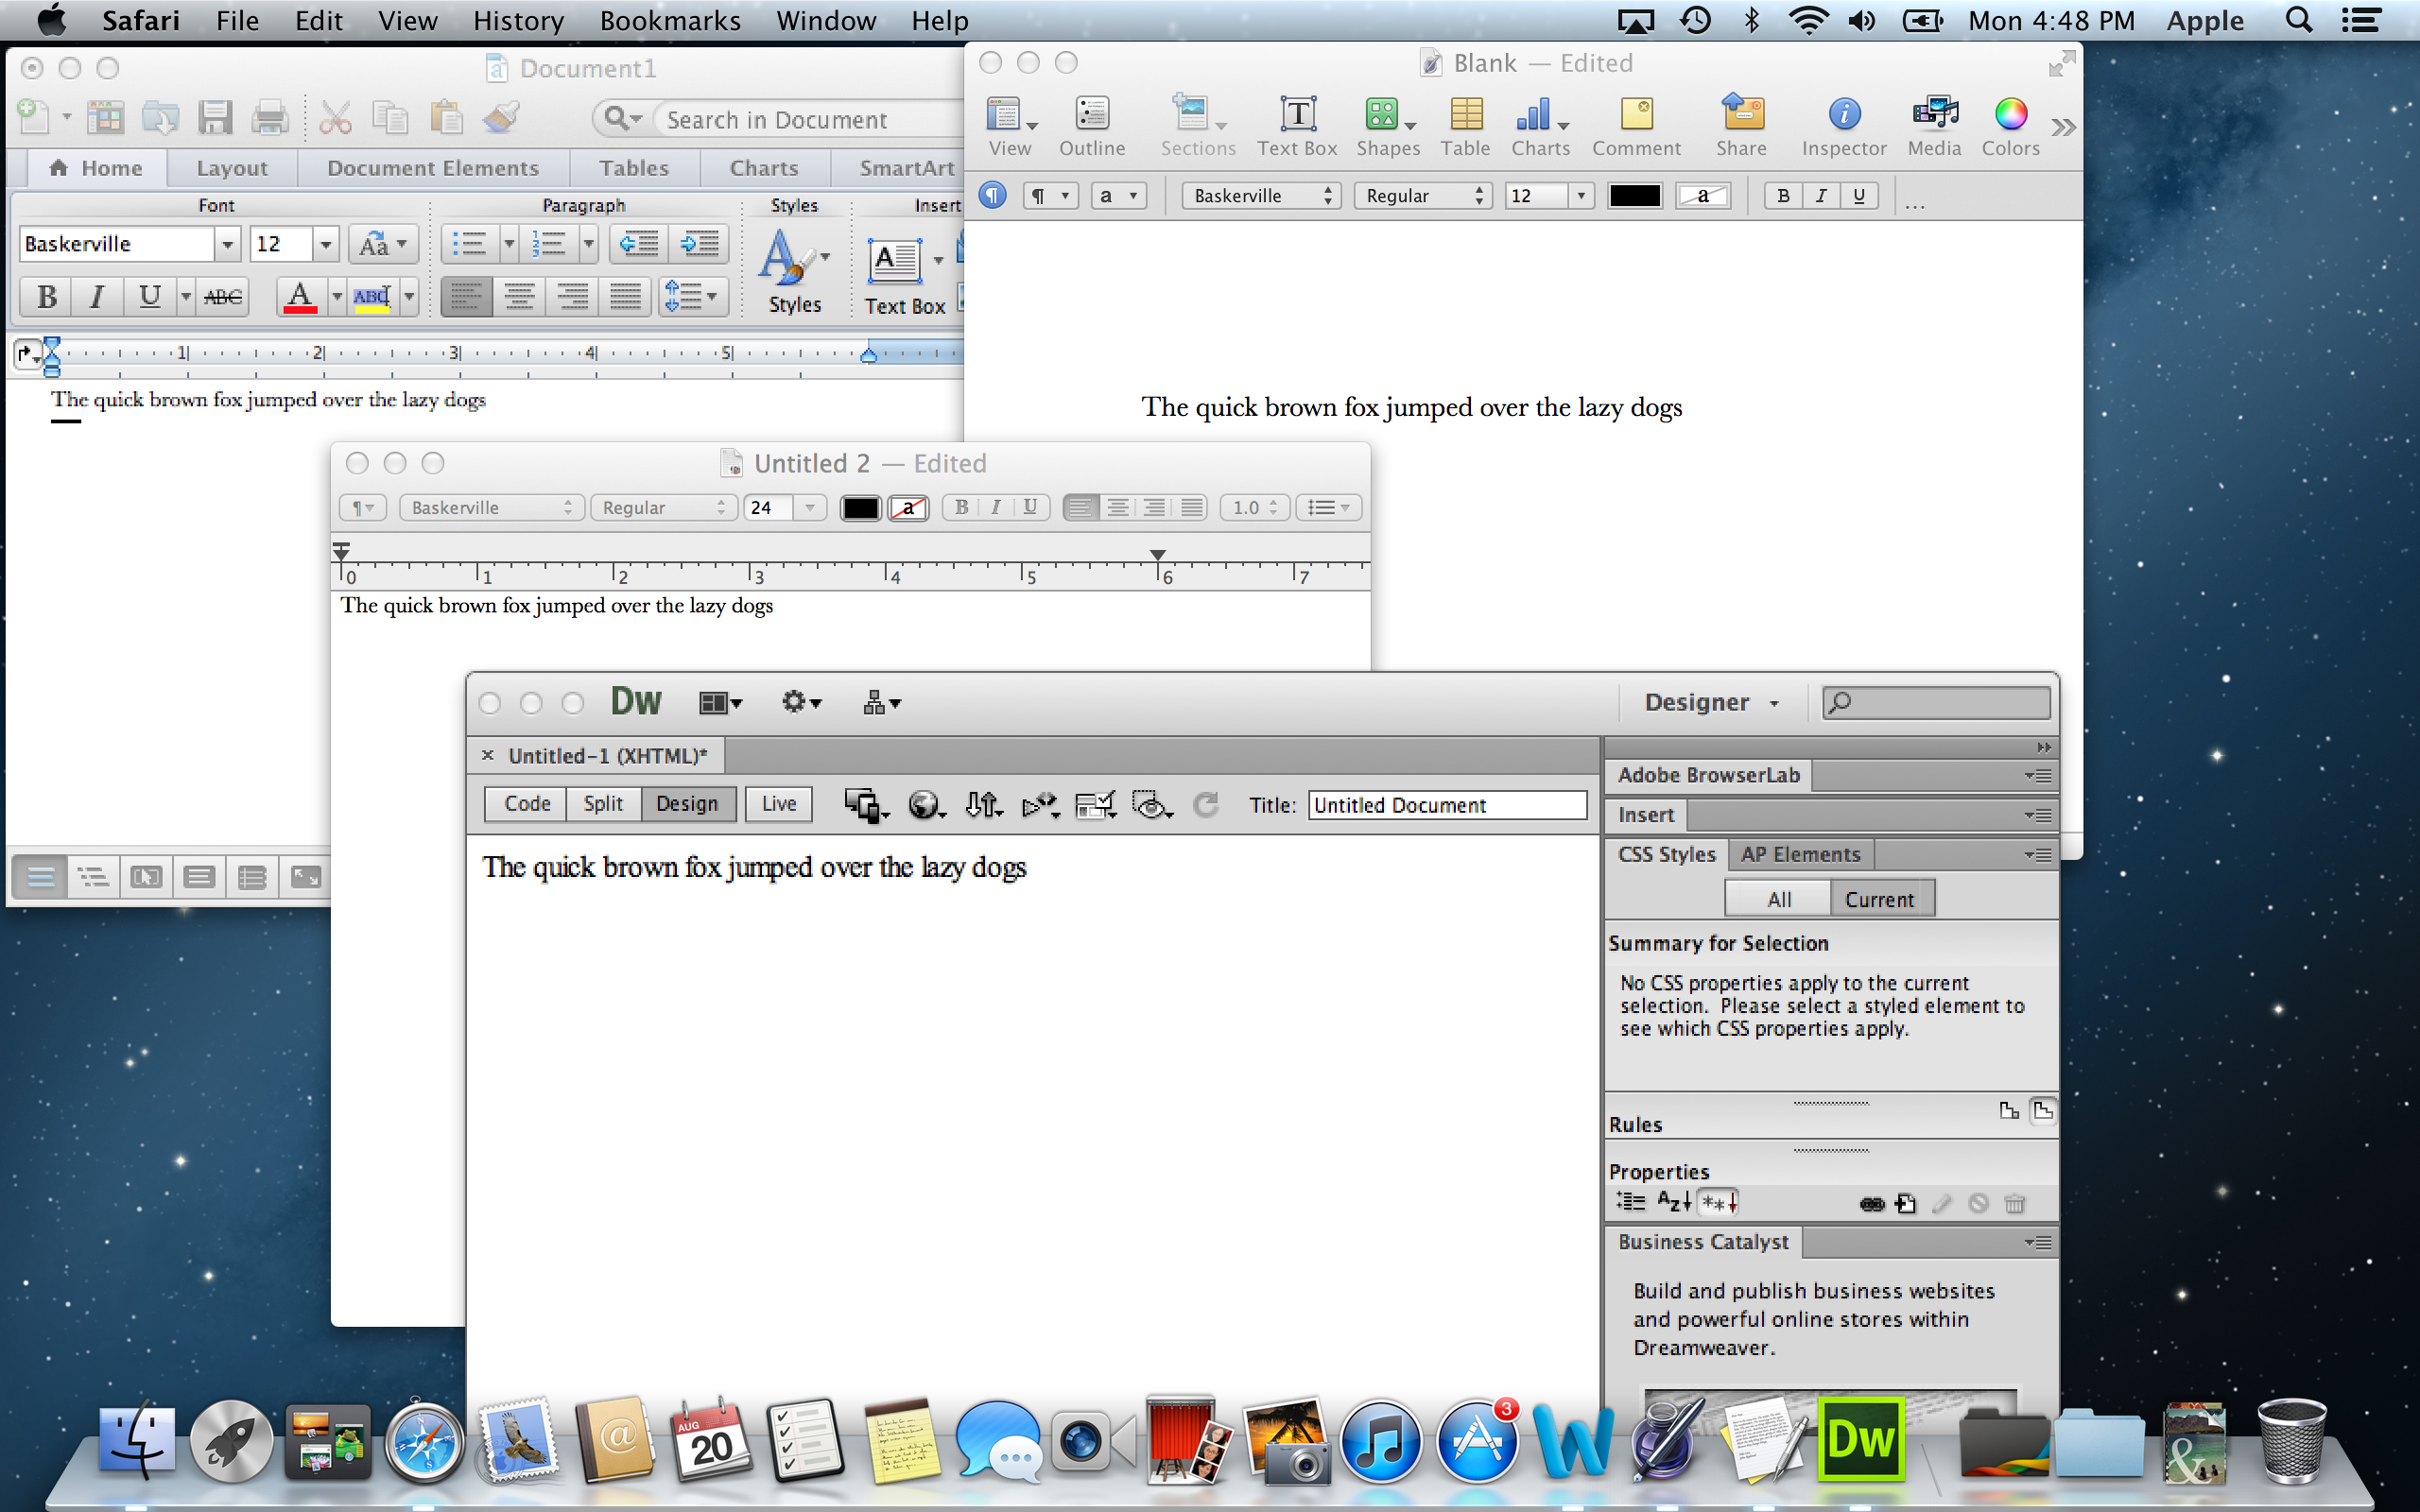 Microsoft Office For Mac 2011 Retina Update